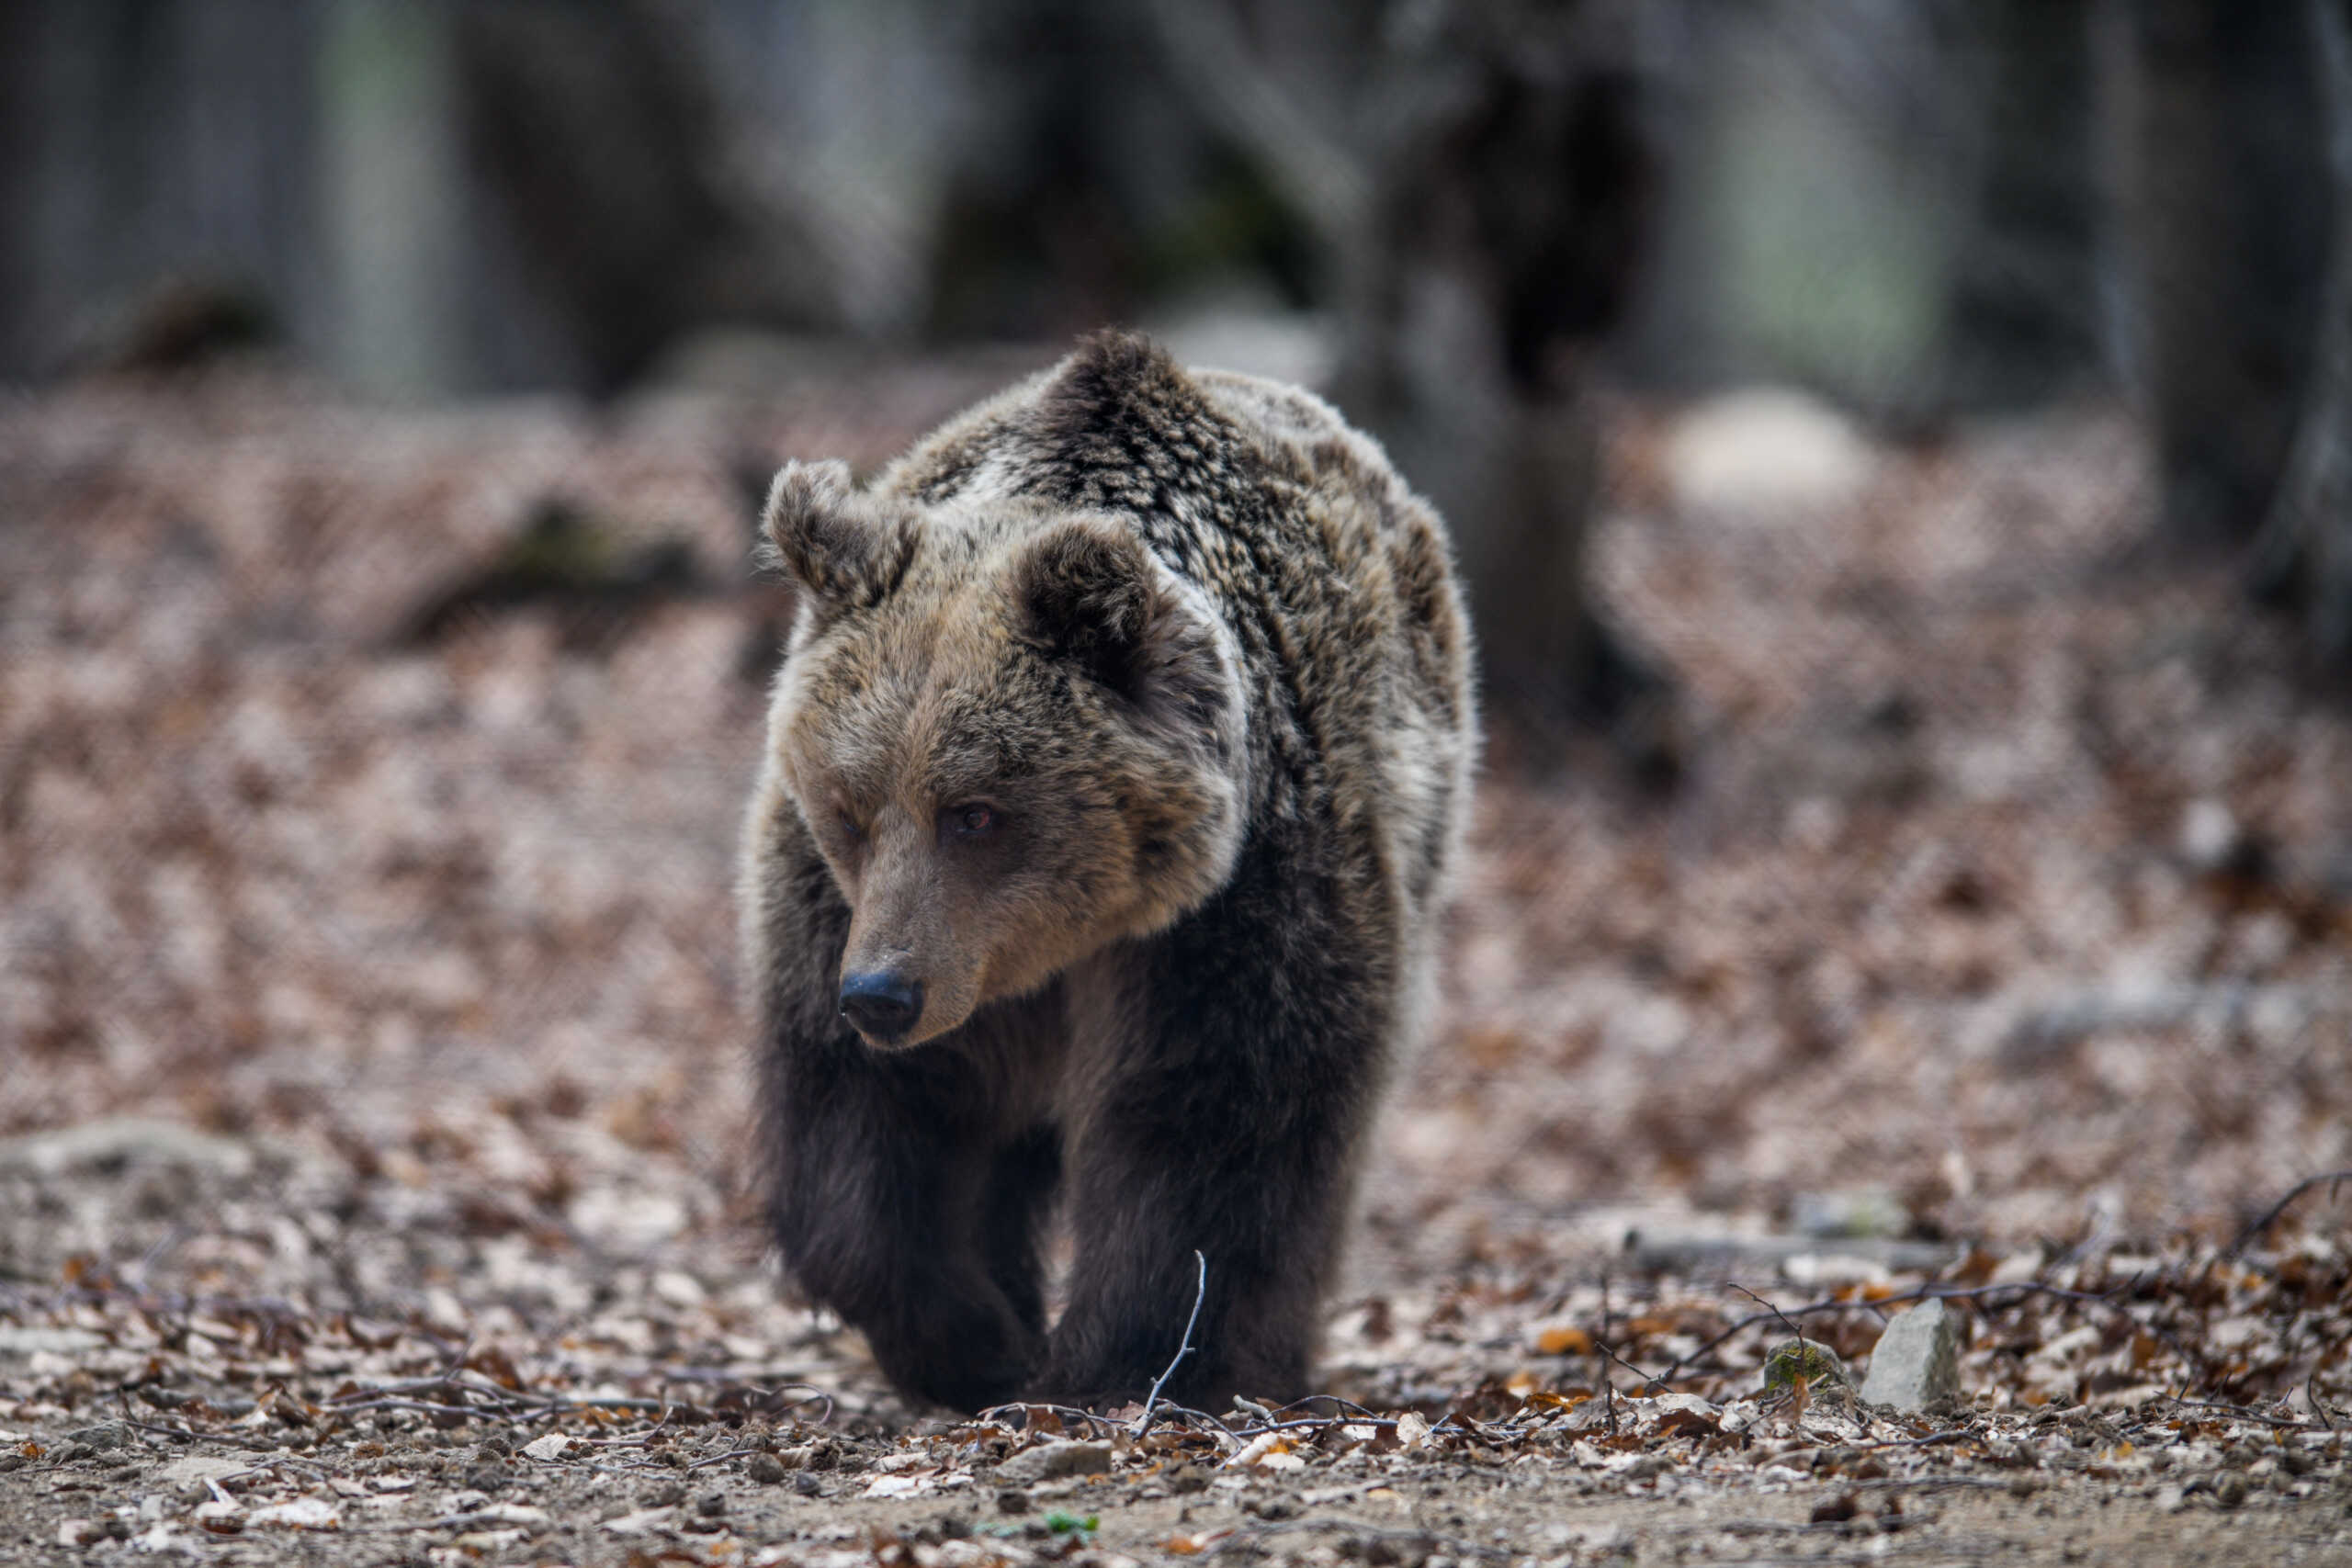 Καστοριά: Τι συμβαίνει με τις αρκούδες που κατεβαίνουν όλο και πιο συχνά σε κατοικημένες περιοχές